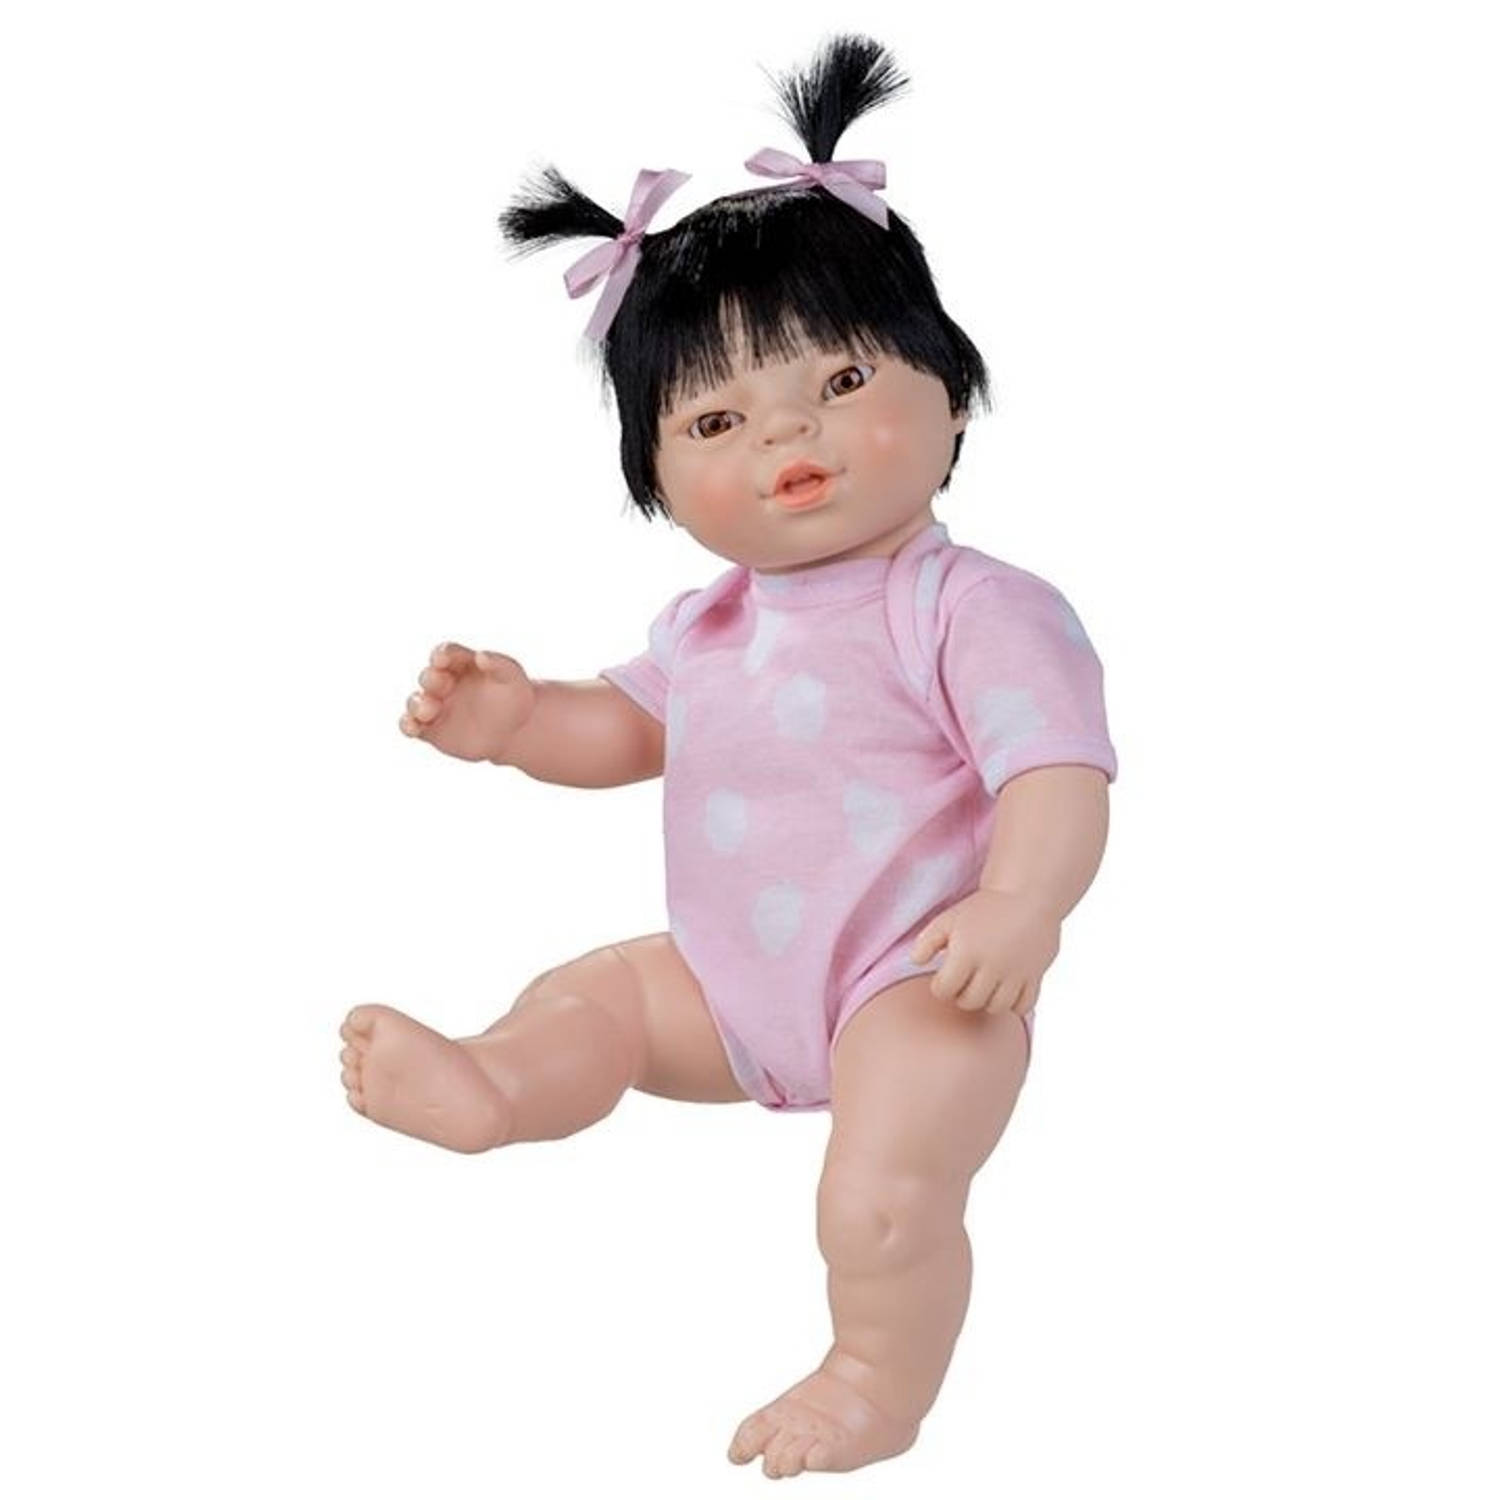 Soeverein Hijgend Cordelia Berjuan babypop Newborn met romper Aziatisch 38 cm meisje | Blokker